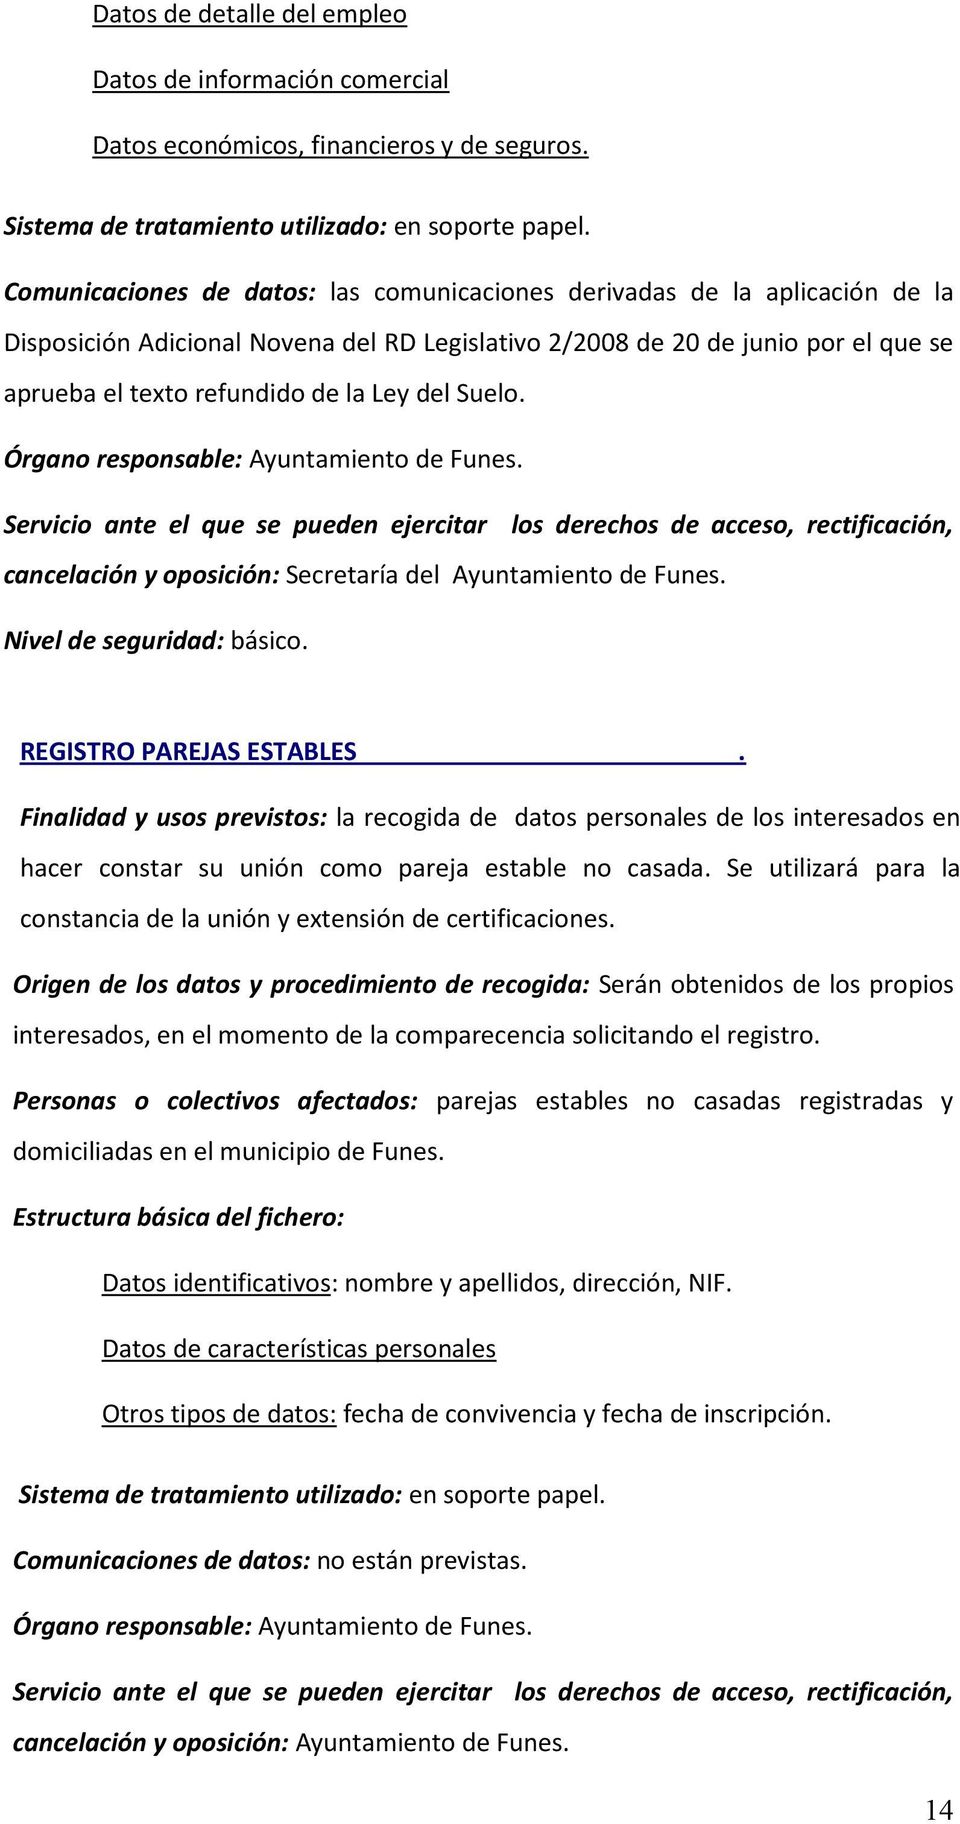 del Suelo. cancelación y oposición: Secretaría del Ayuntamiento de Funes. Nivel de seguridad: básico. REGISTRO PAREJAS ESTABLES.